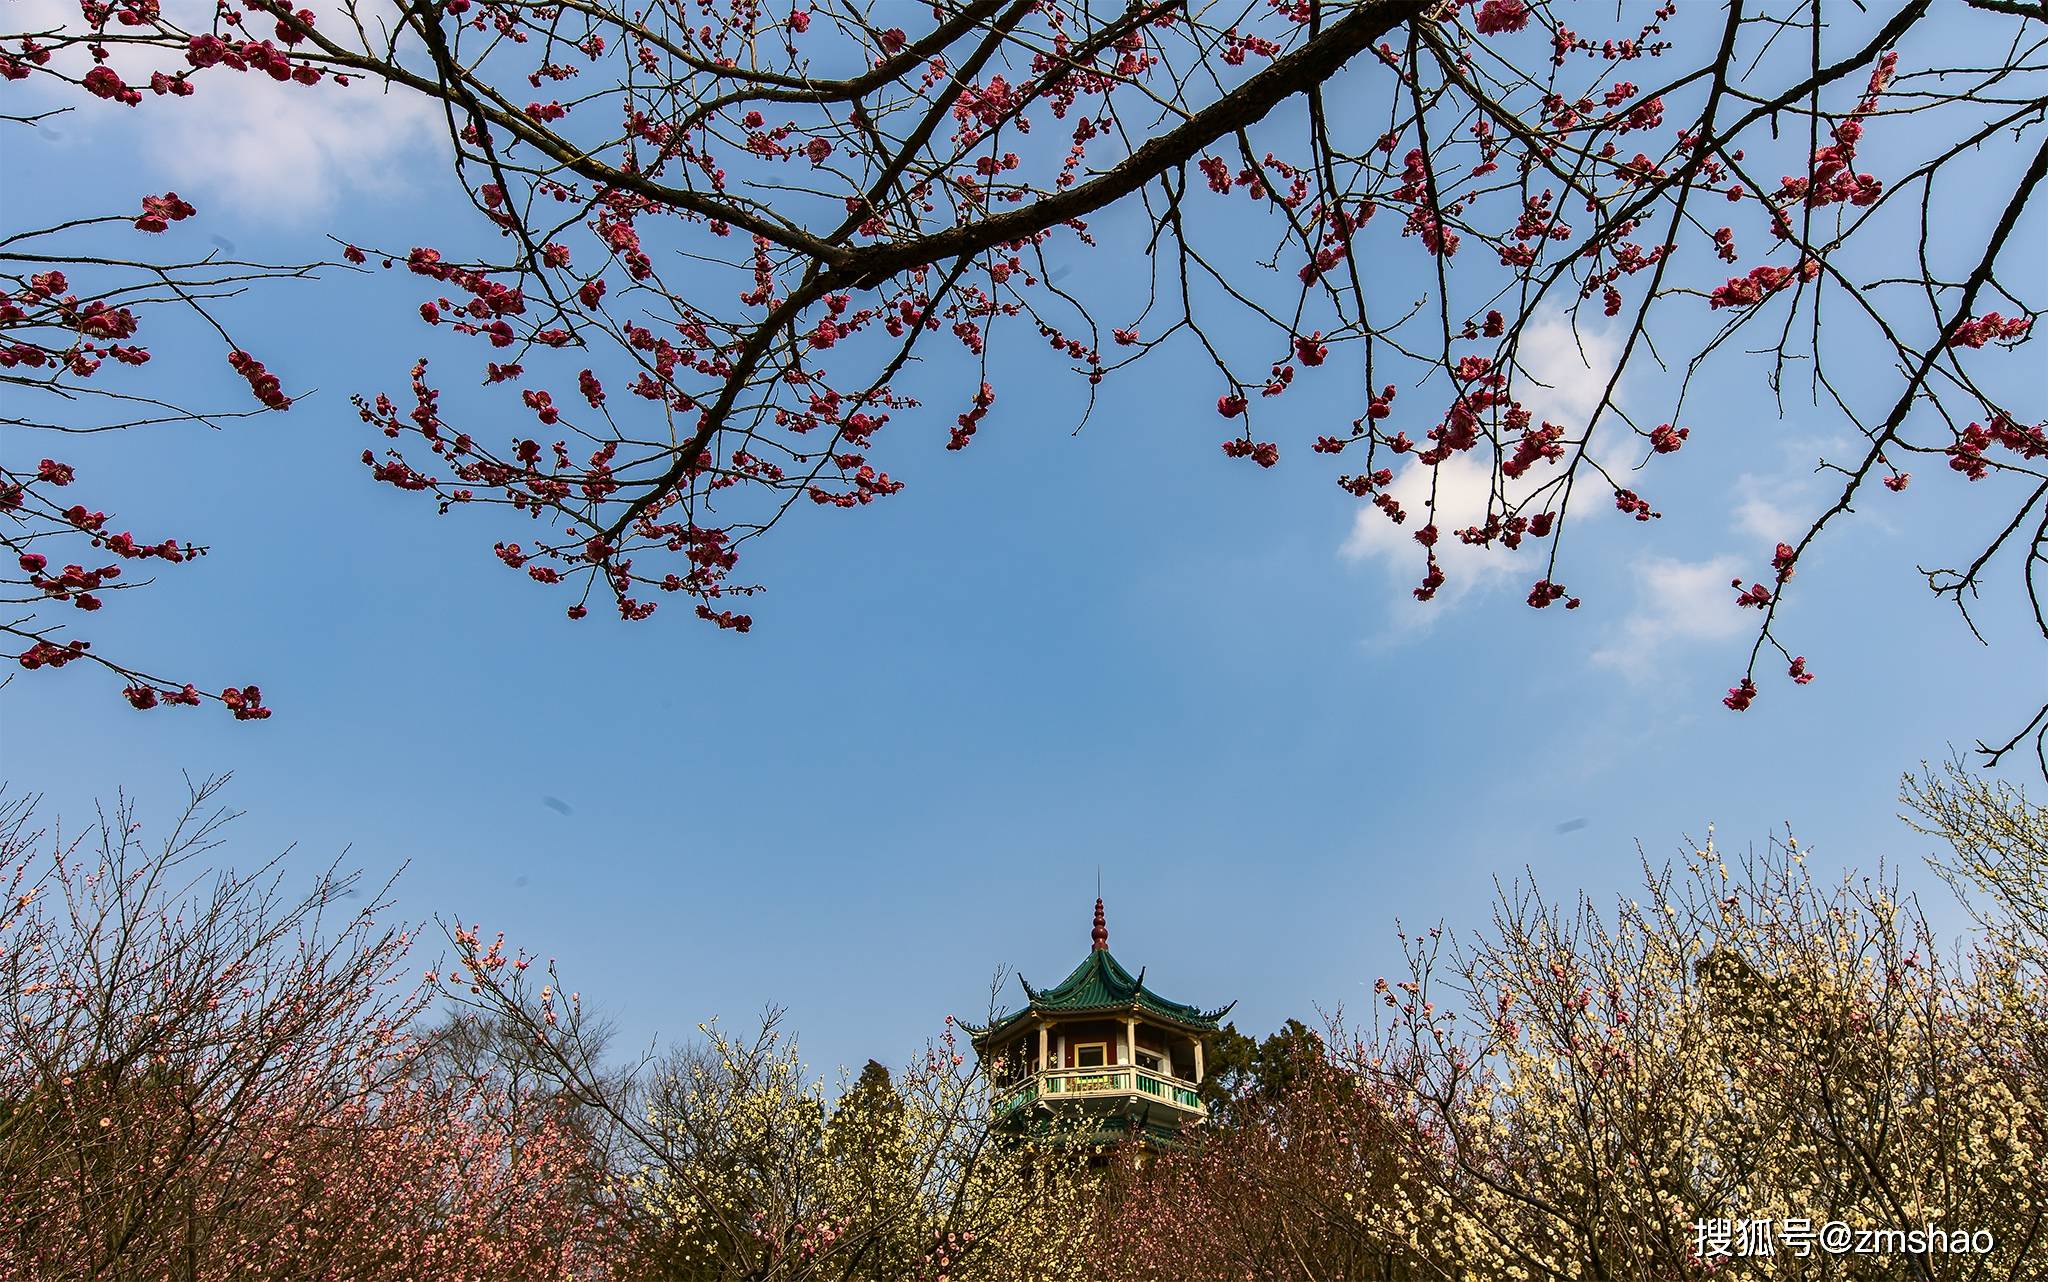 【携程攻略】武汉东湖梅园景点,梅花开了，满山遍野。即有盛开一树的浪漫，又有几点梅影的疏弄。难得…